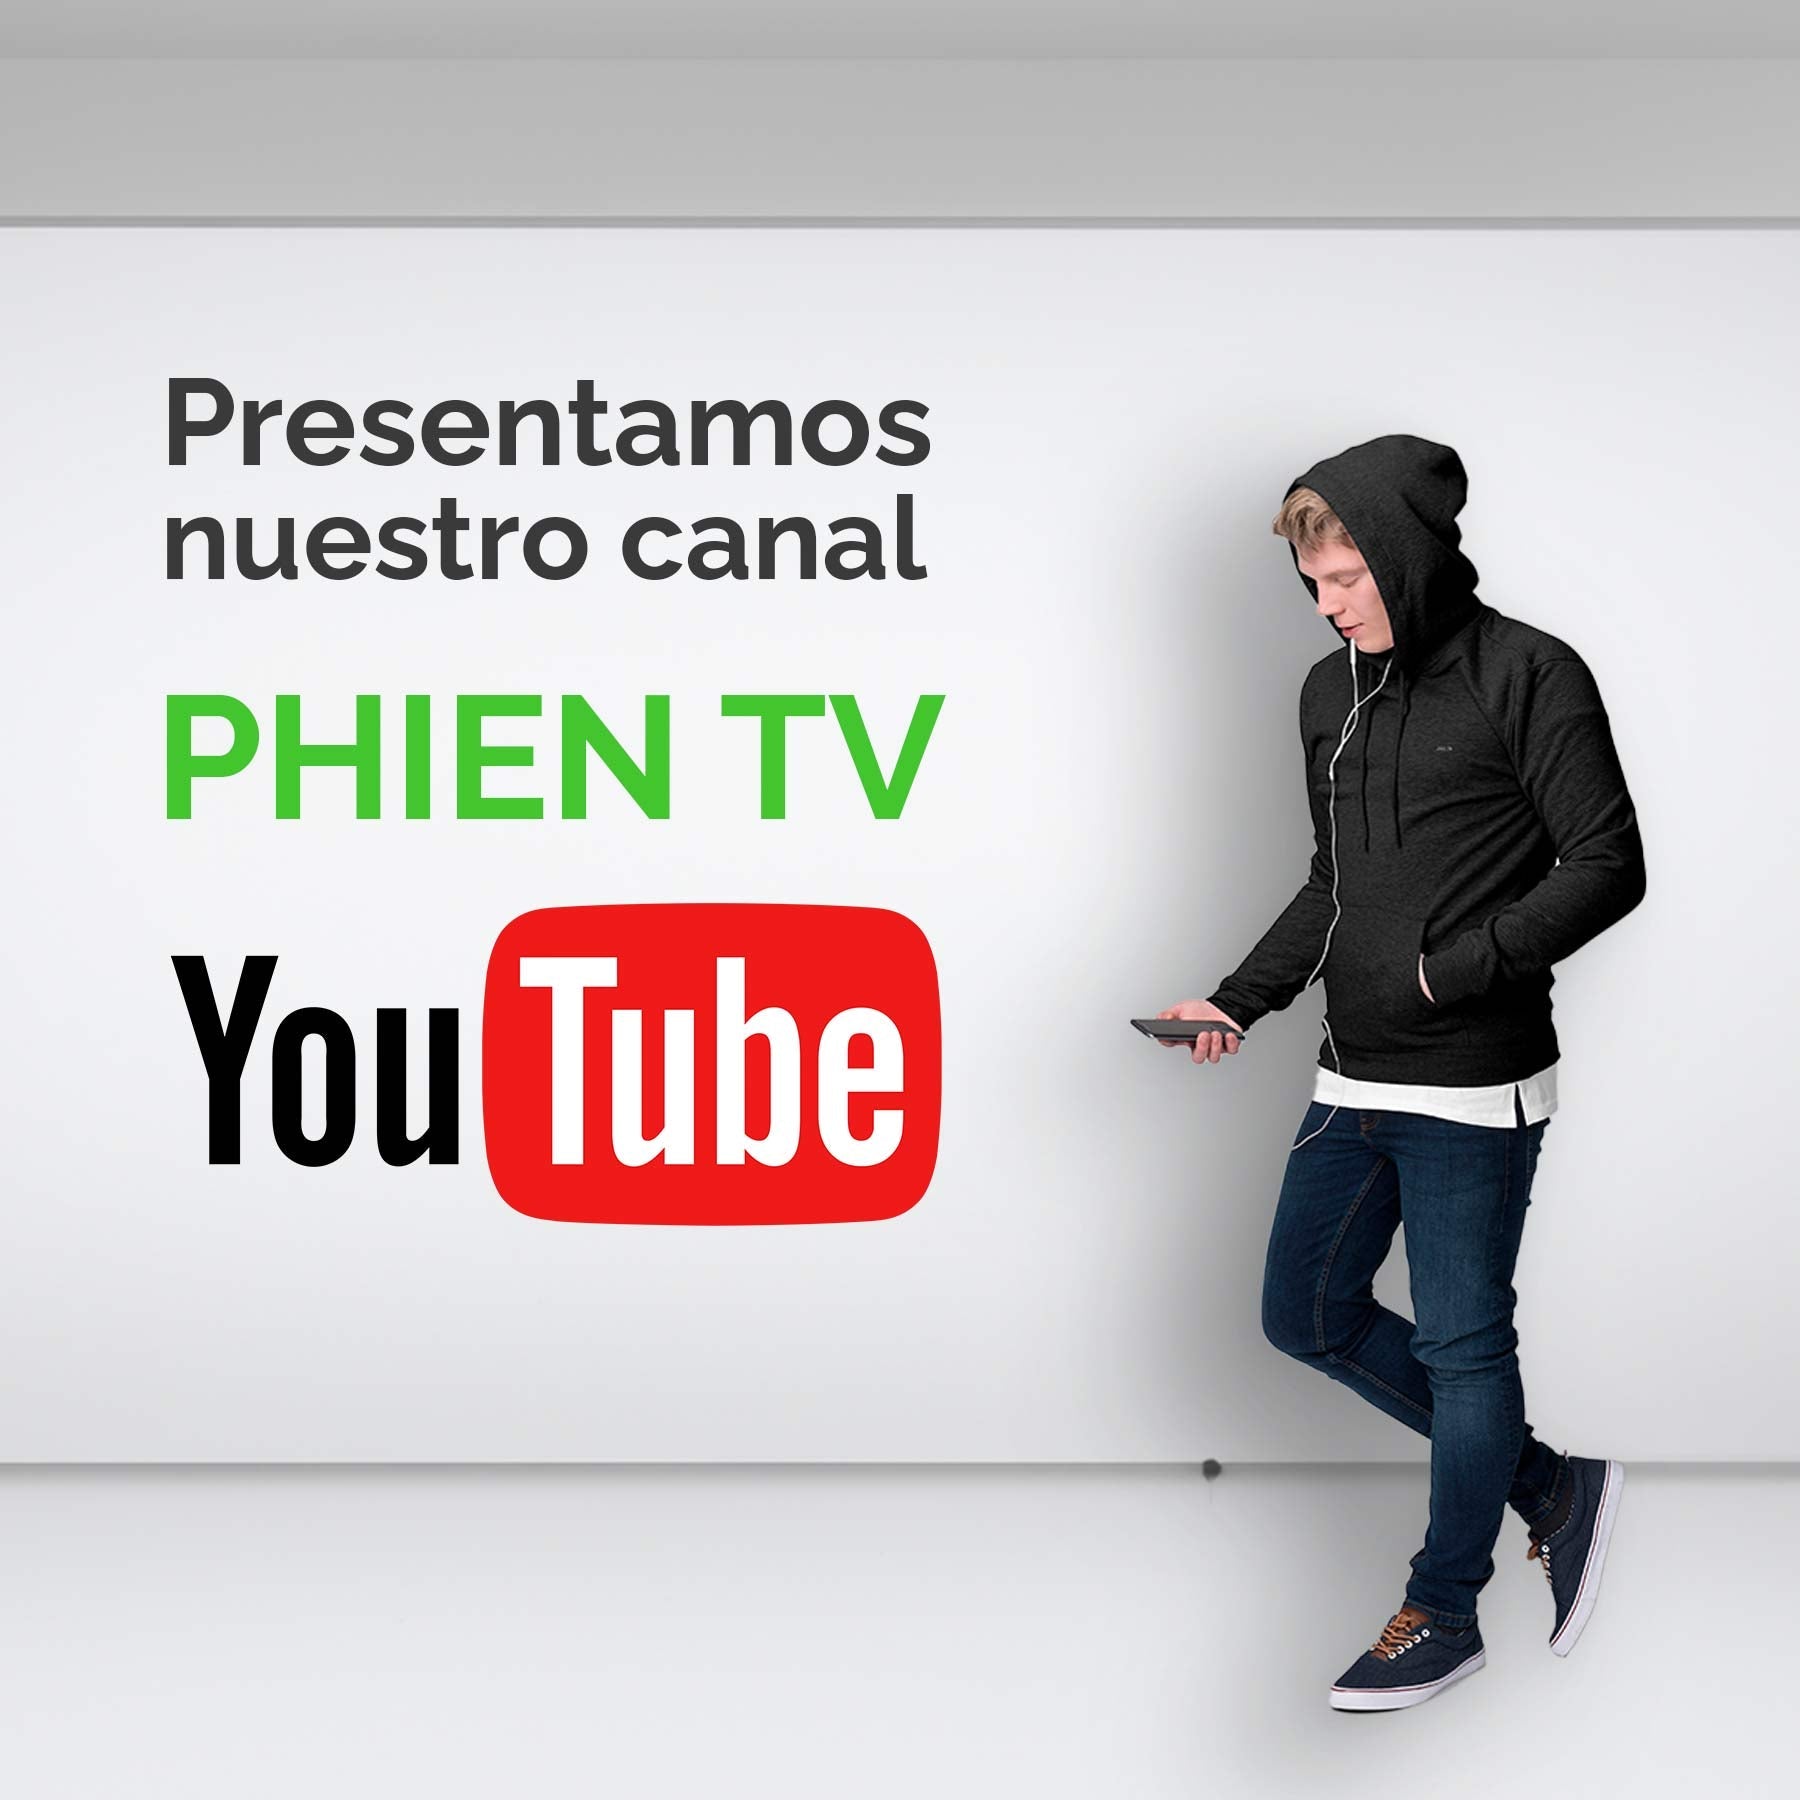 ¡Bienvenidos a PHIEN TV! Donde la moda y la conversación se encuentran - PHIEN